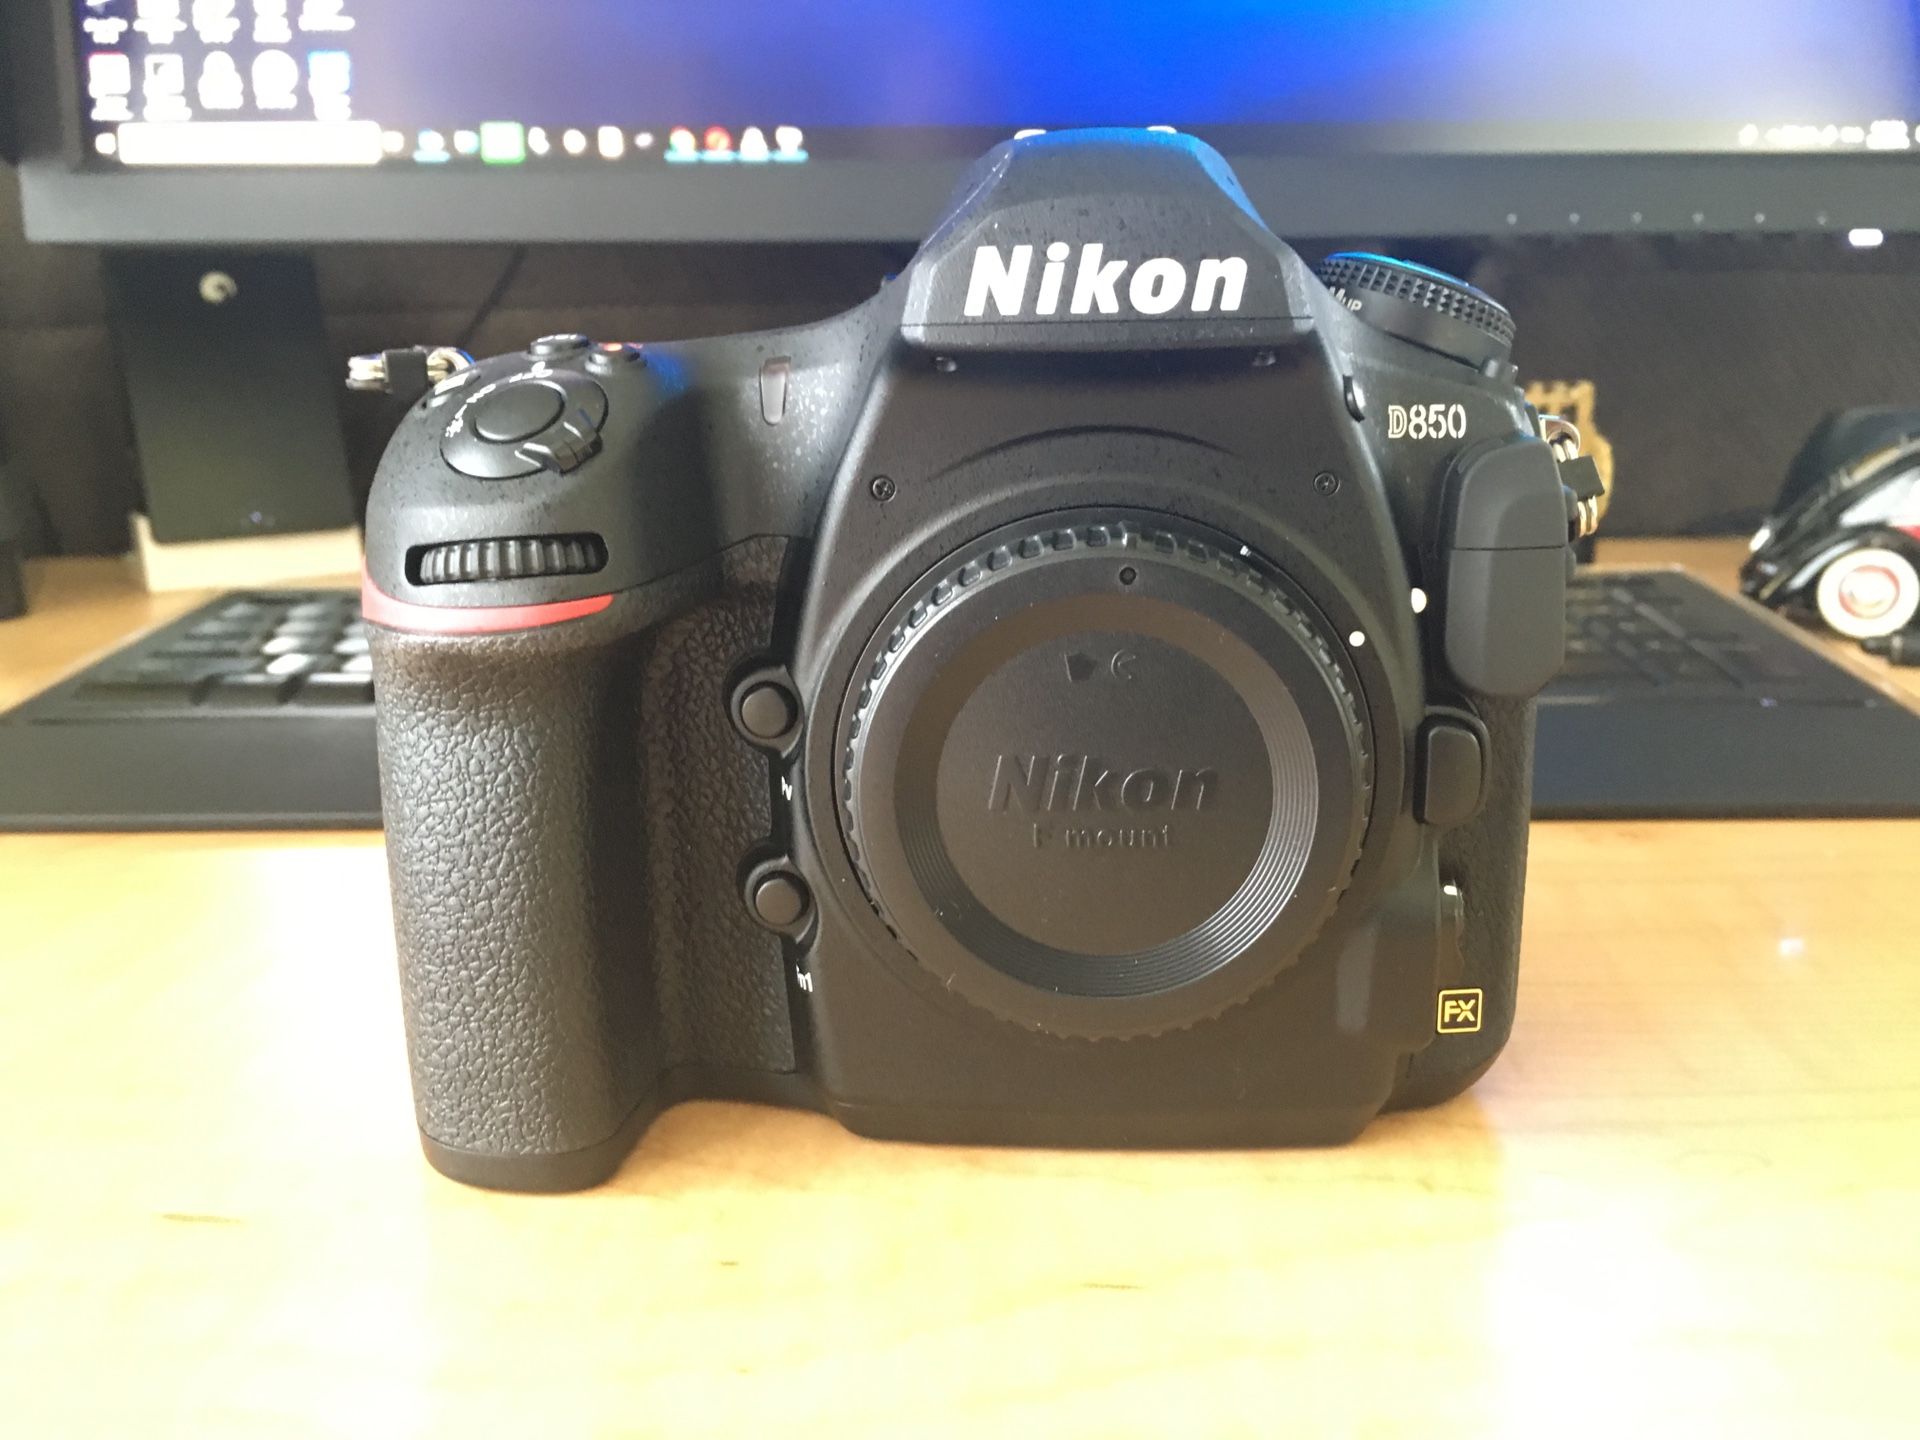 Nikon D850+Nikkor 70-200mm VR II